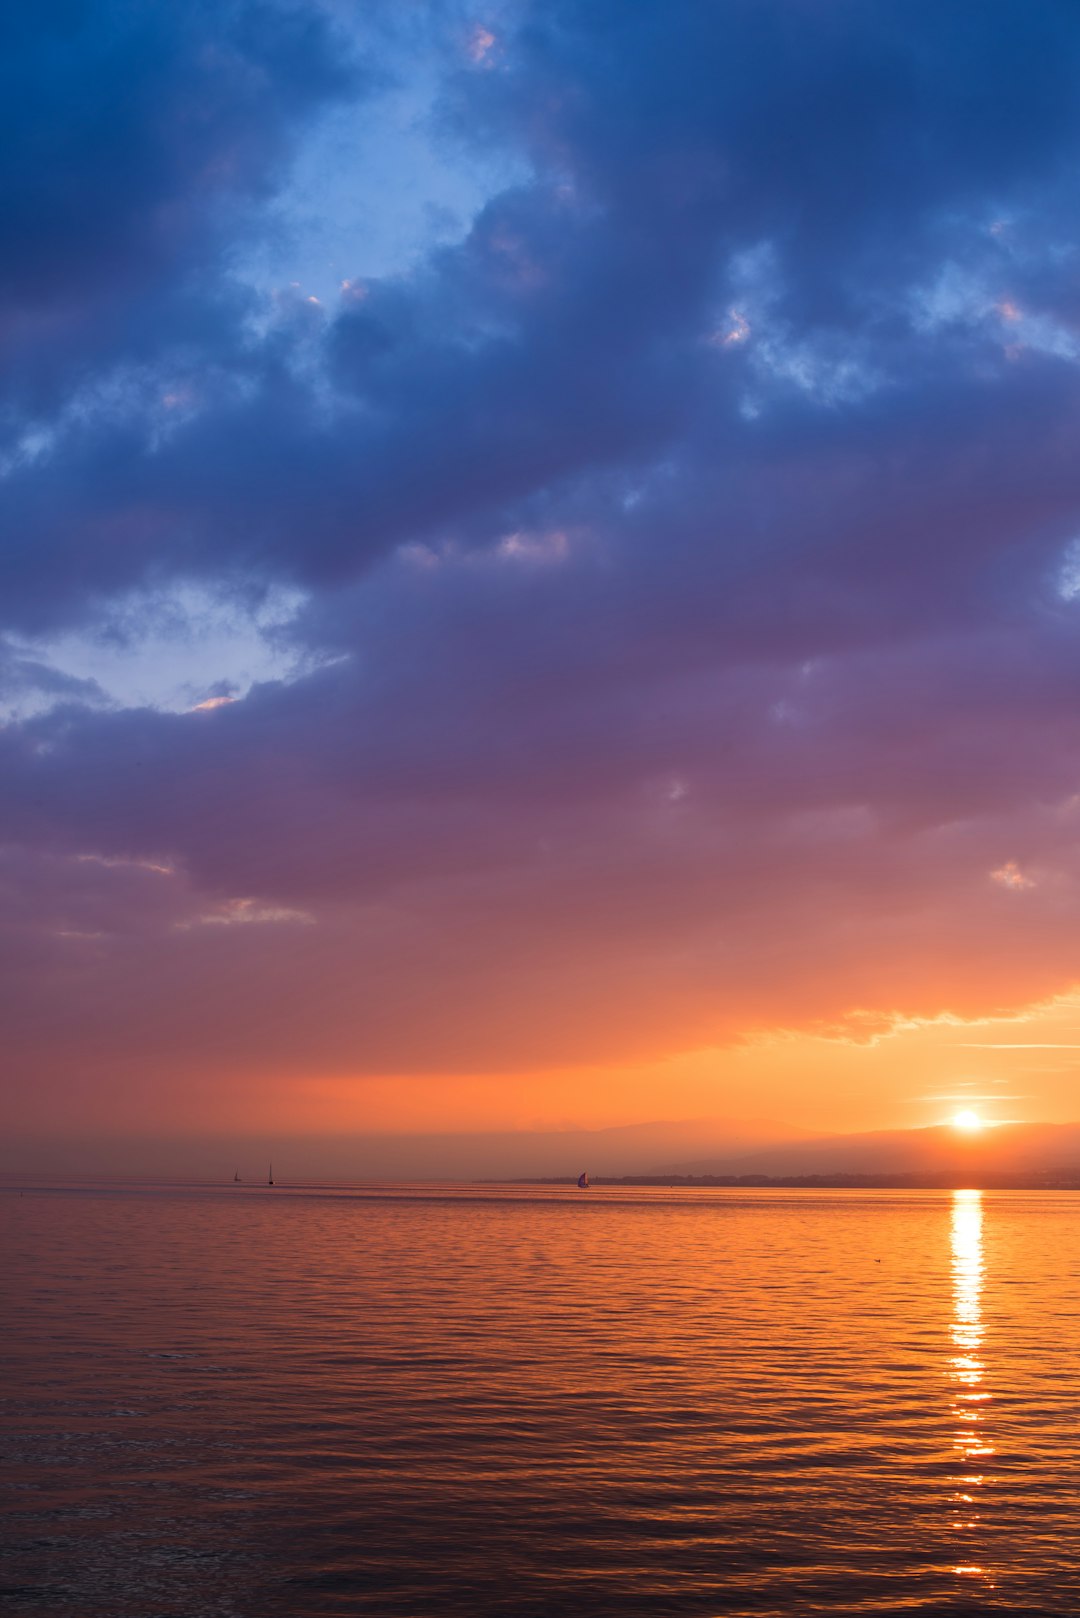 Ocean Sunset Photo By Gabriel Garcia Marengo Gabrielgm On Unsplash